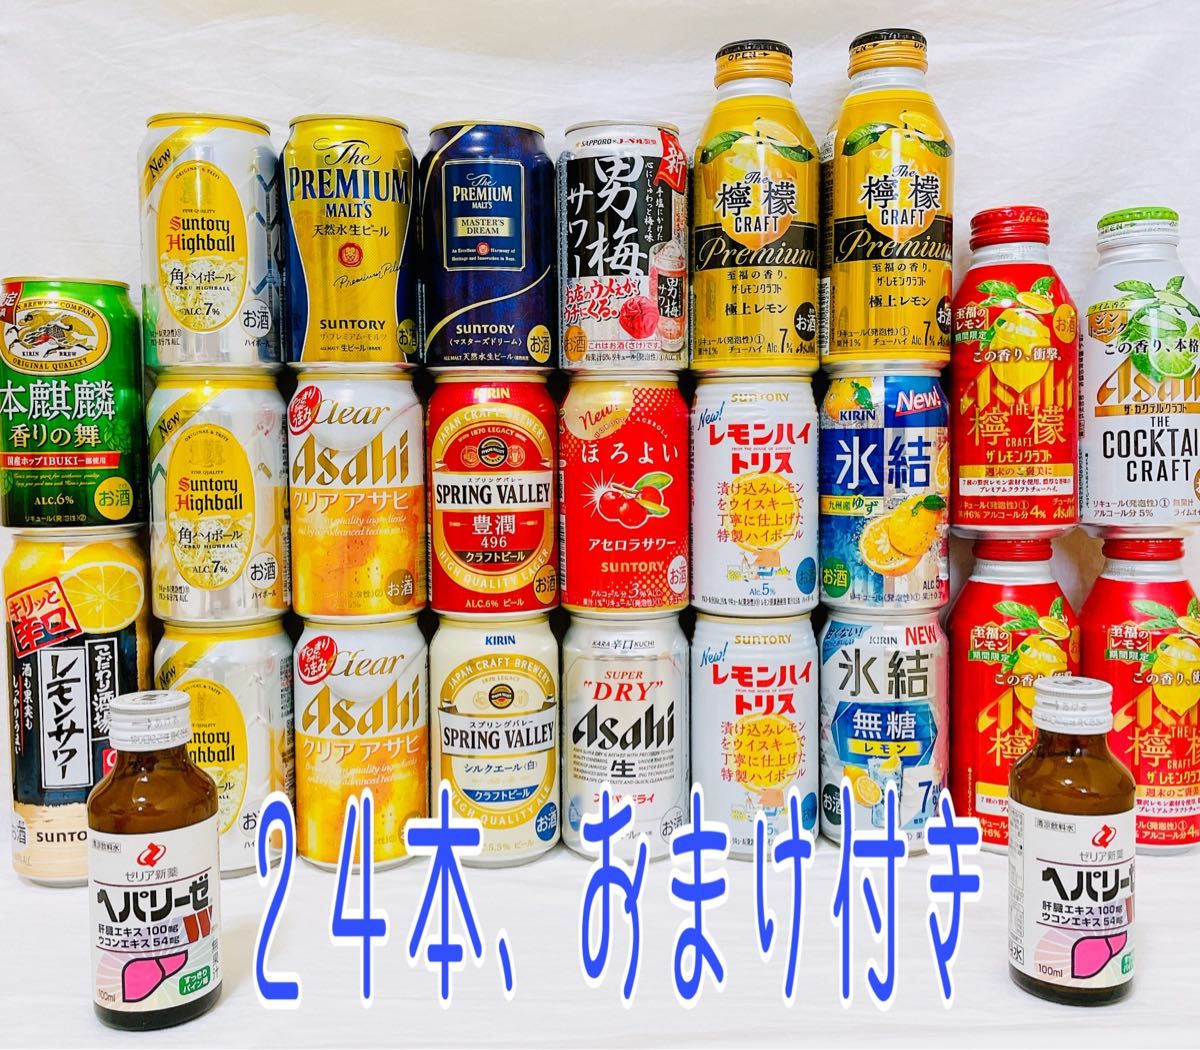 ビール・発泡酒・酎ハイまとめうり 44本 - ビール・発泡酒